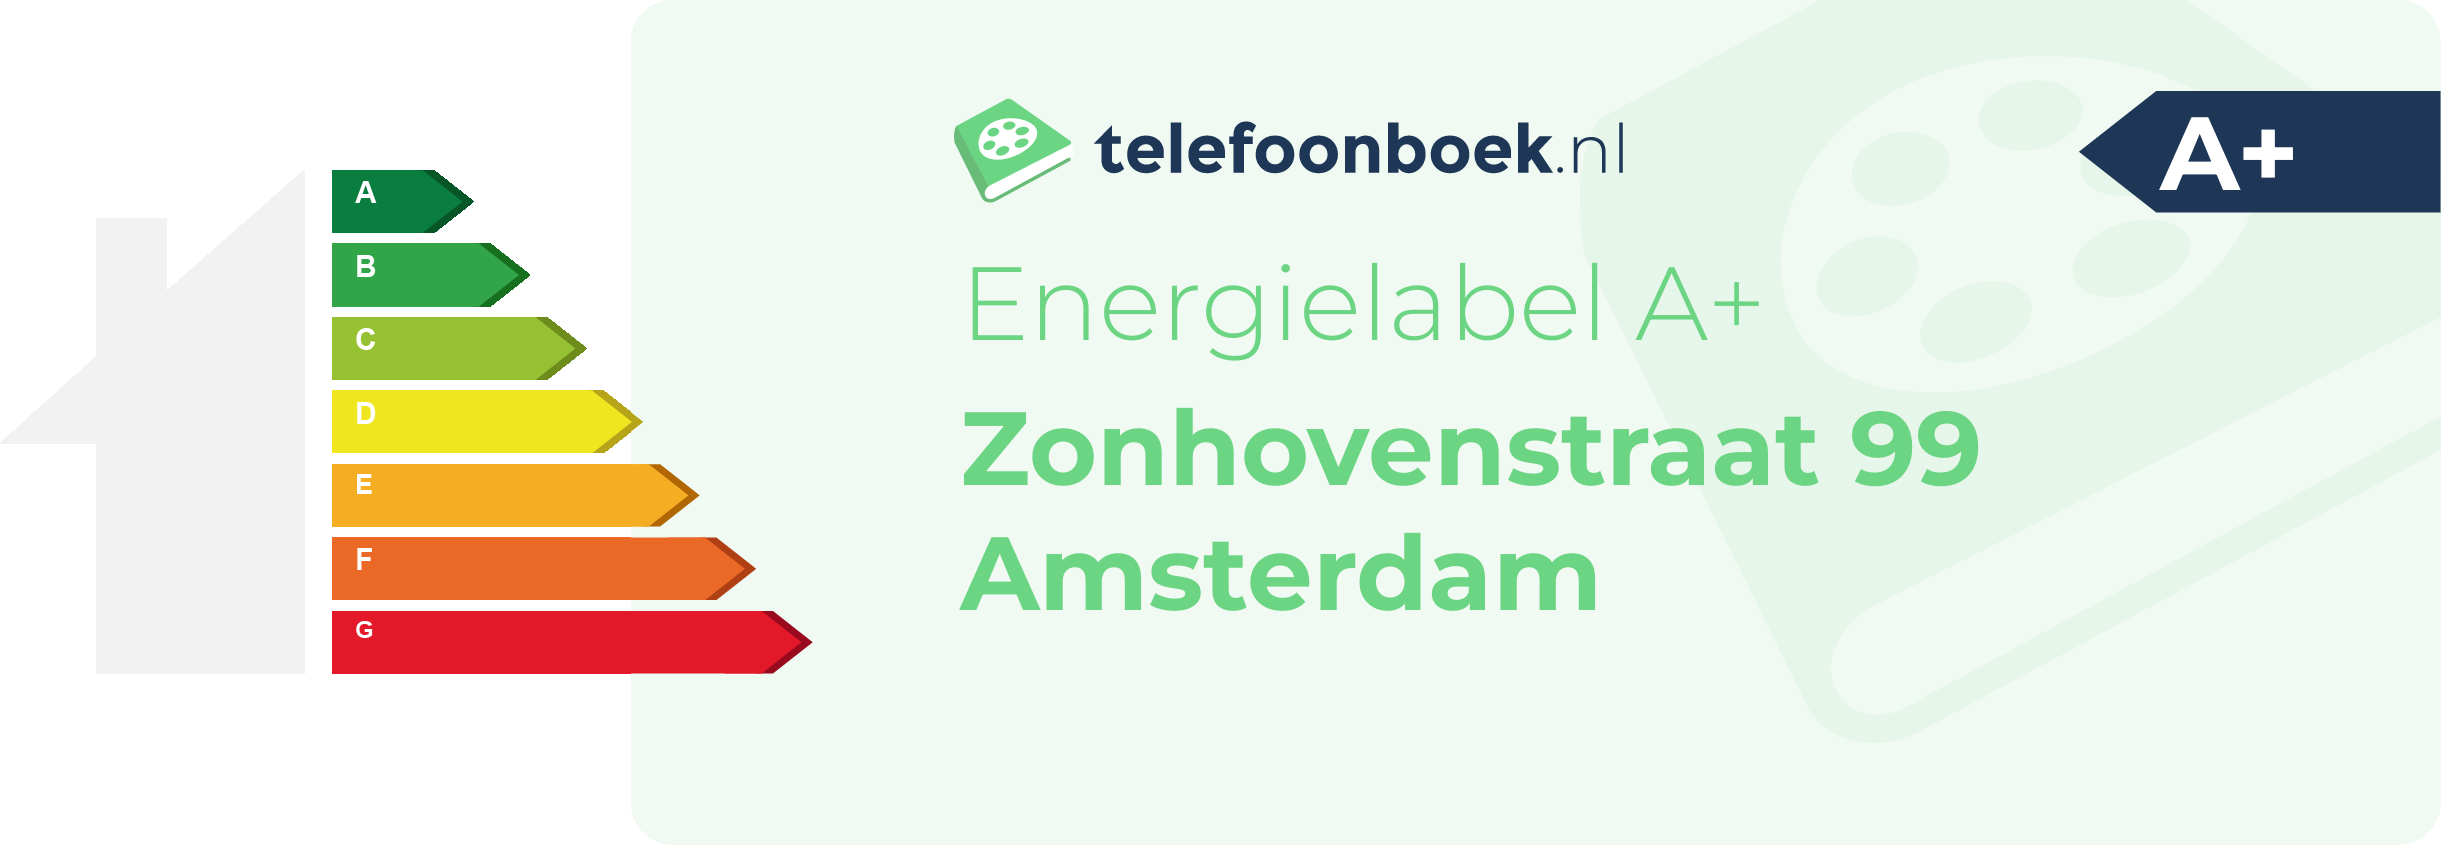 Energielabel Zonhovenstraat 99 Amsterdam